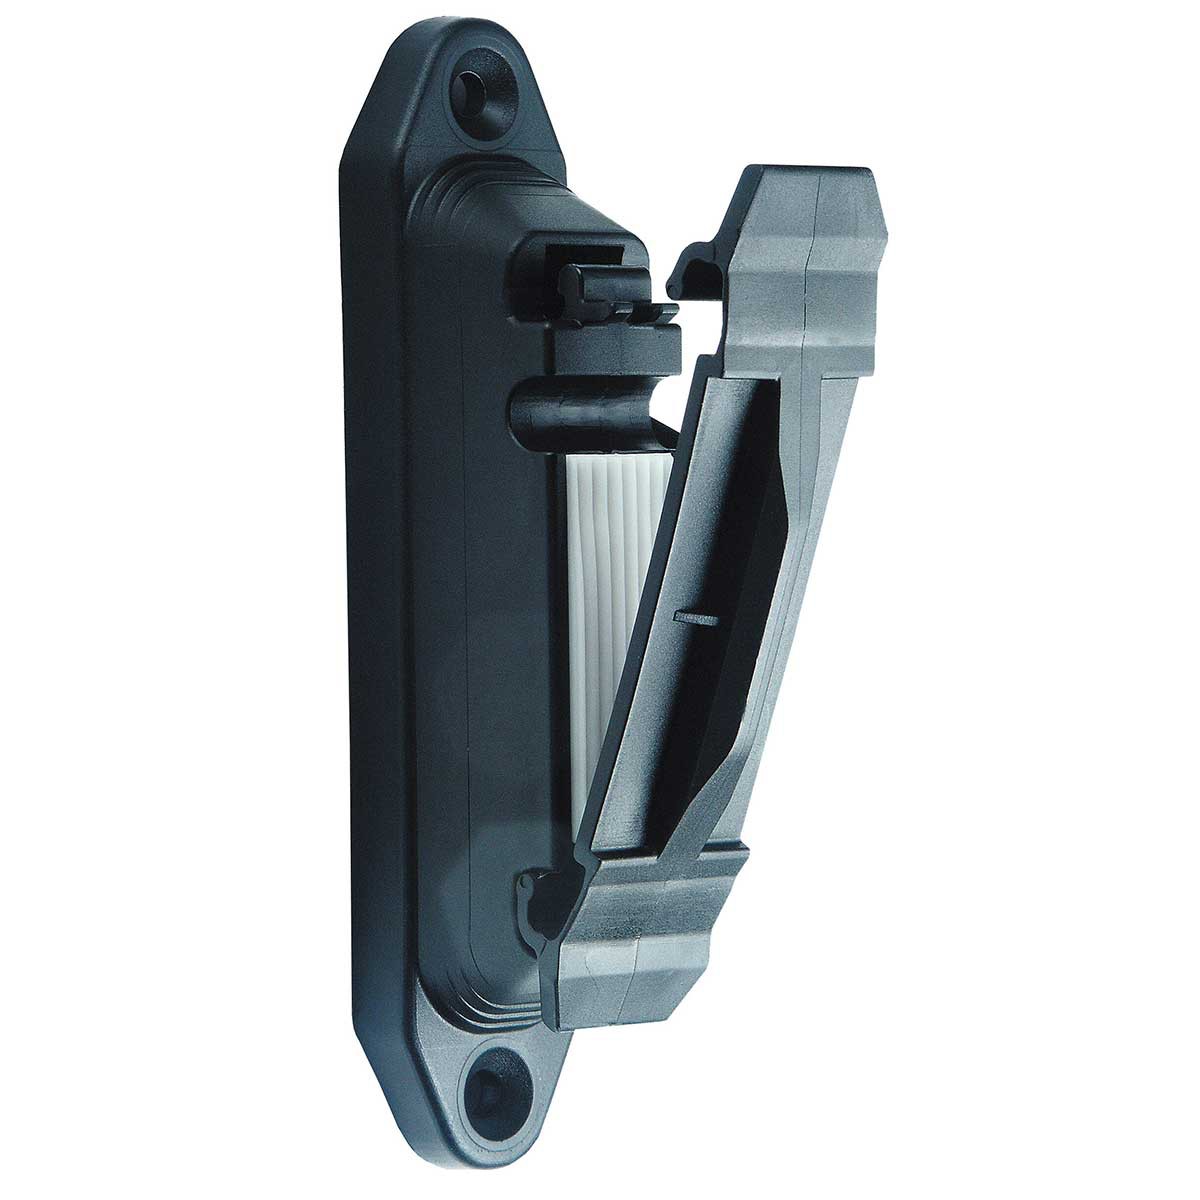 Profi clip insulator black with rubber pad